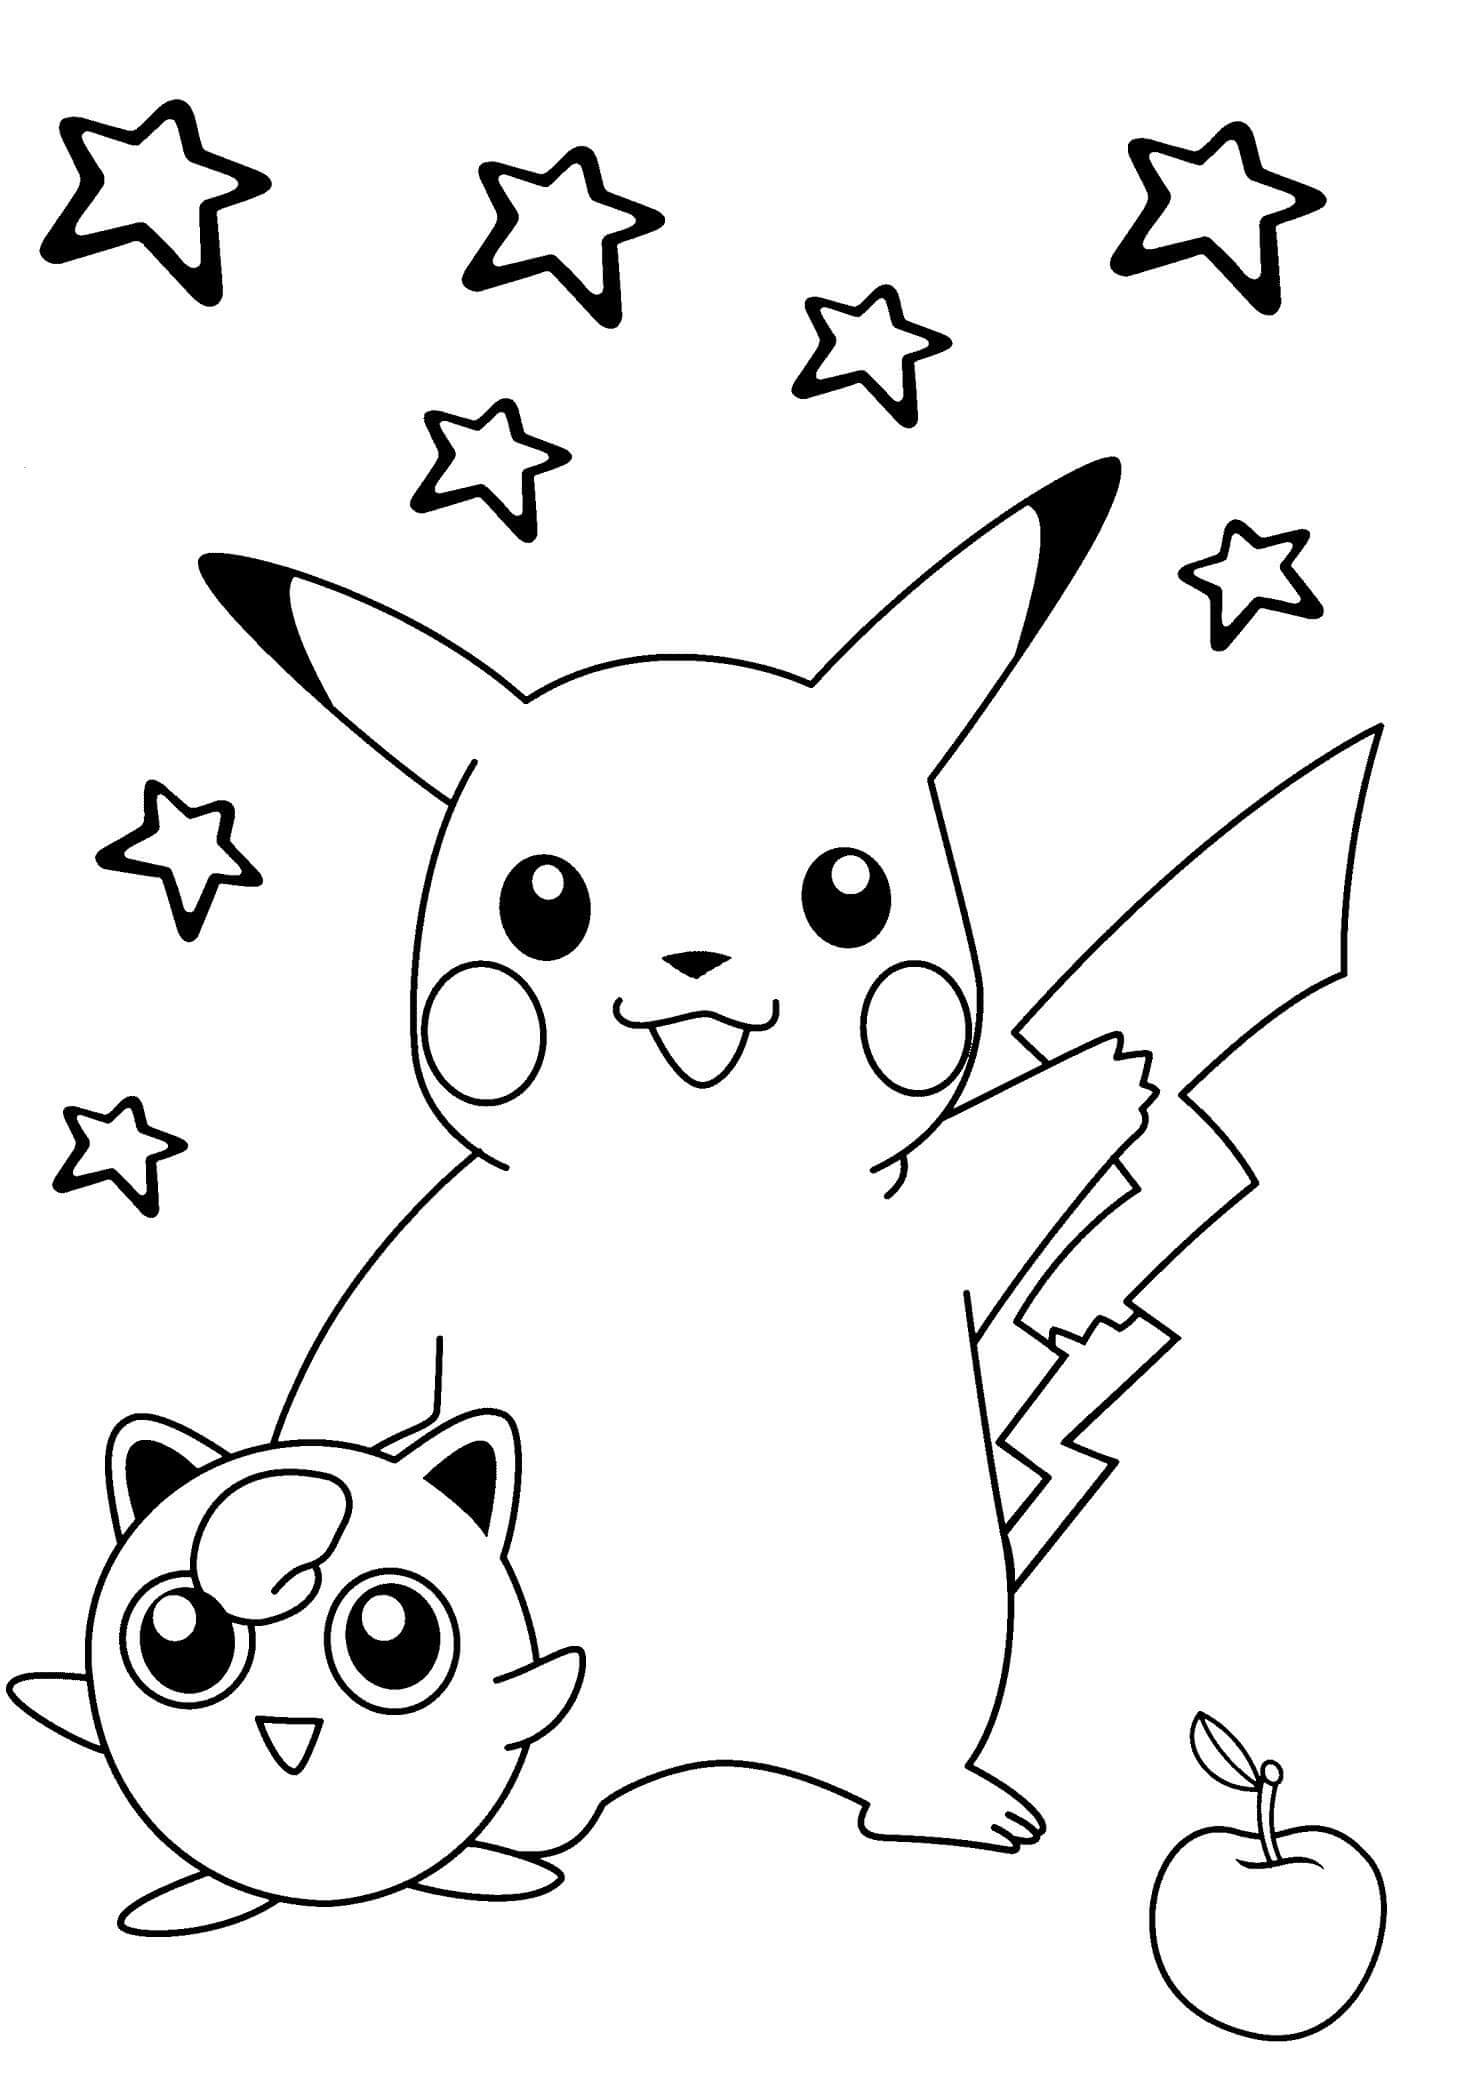 Dibujos de Pikachu Grande y Pequeño Jigglypuff para colorear